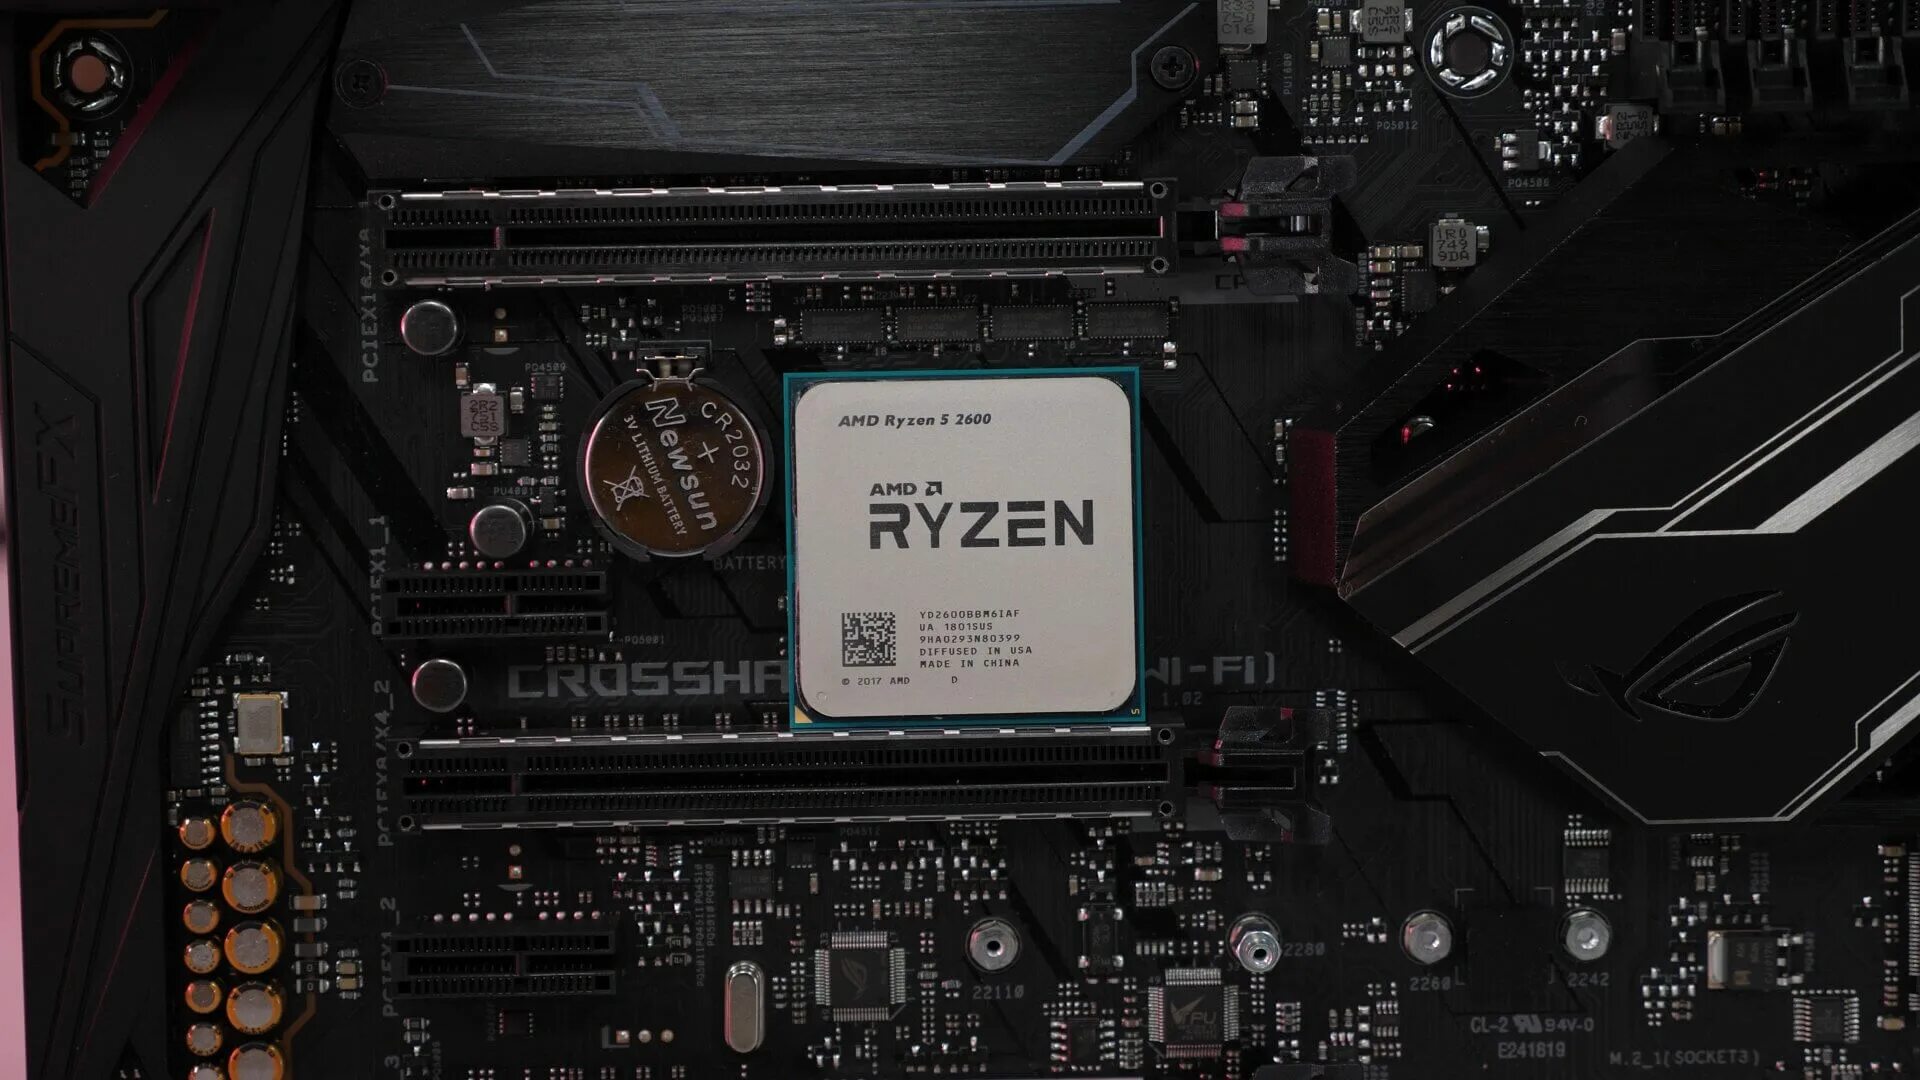 Ryzen 2600 5600. AMD 5 2600. Ryzen 5 2600. AMD r5 2600g. B450m ds3h Ryzen 5 5600x.